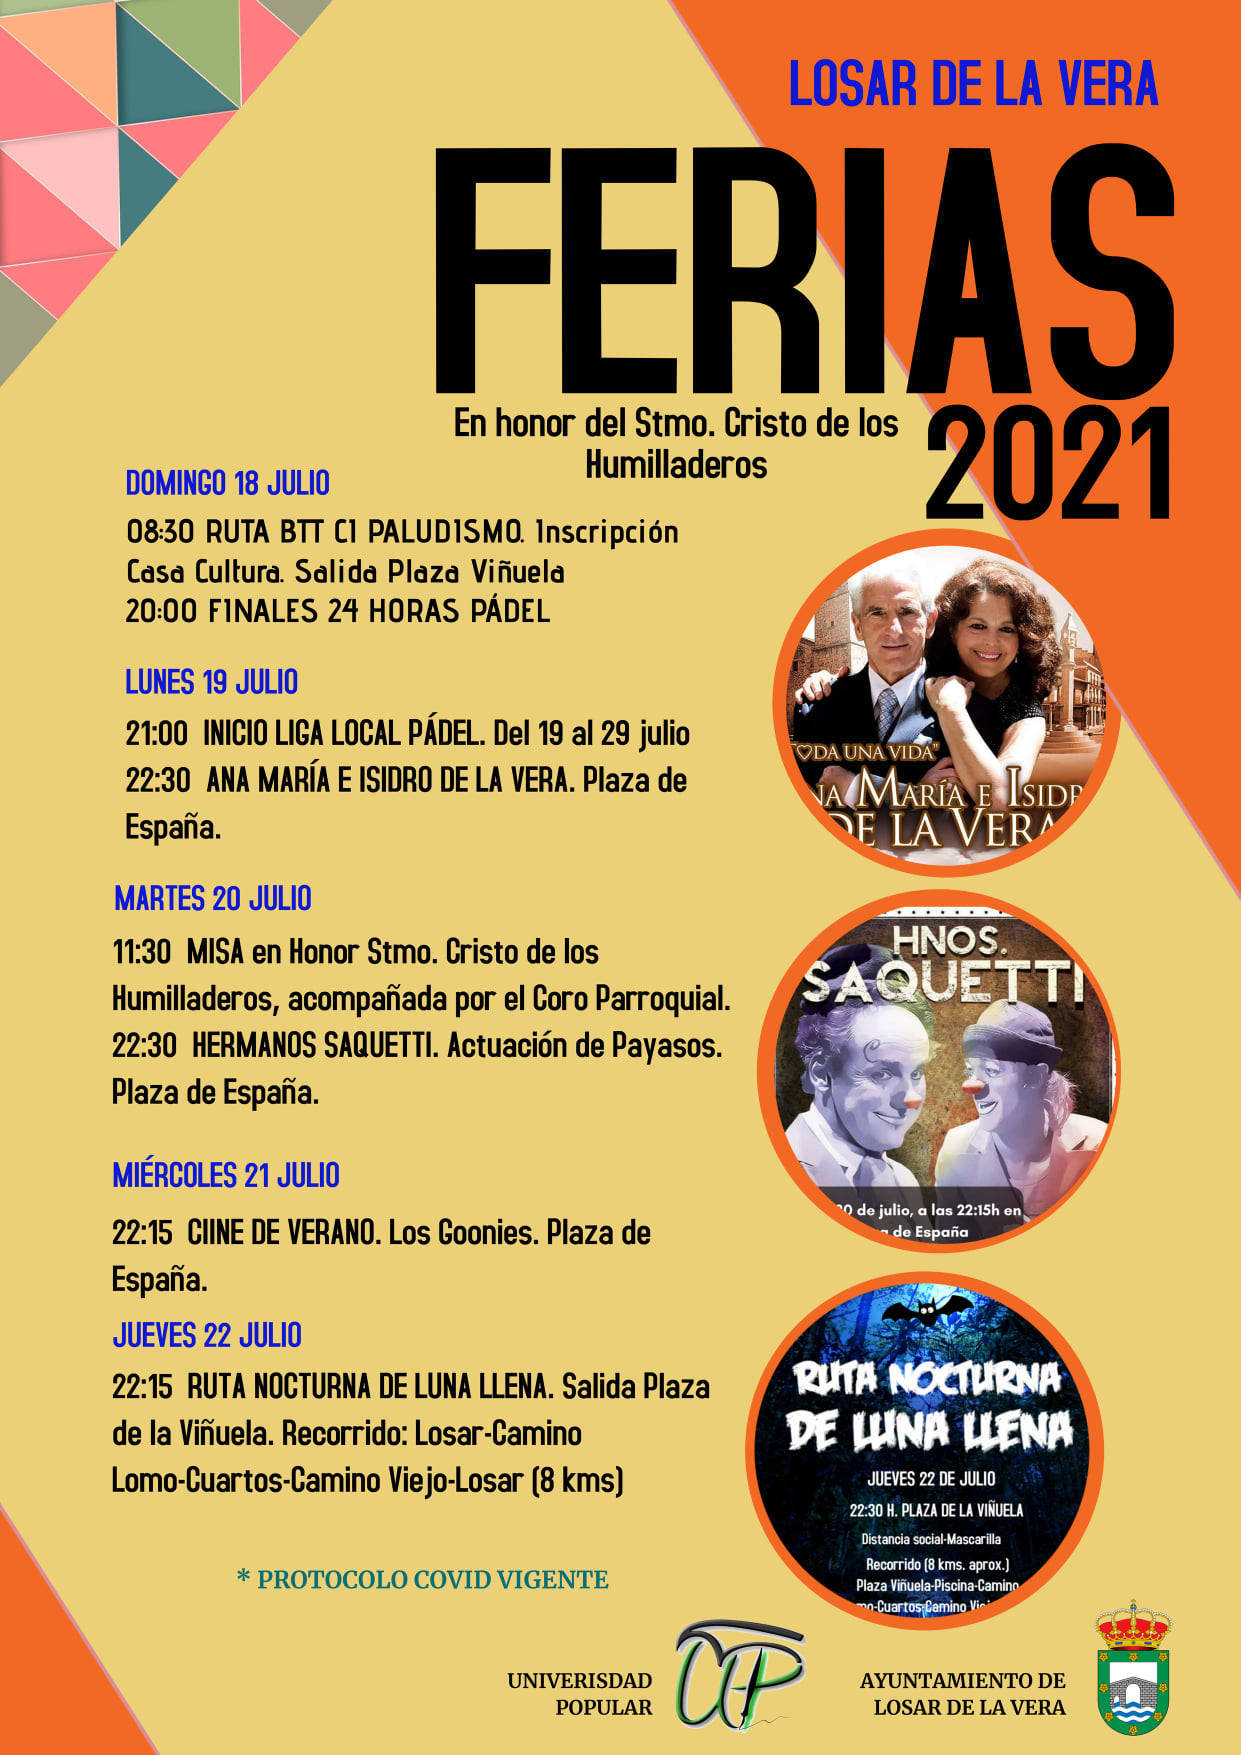 Ferias (2021) - Losar de la Vera (Cáceres)